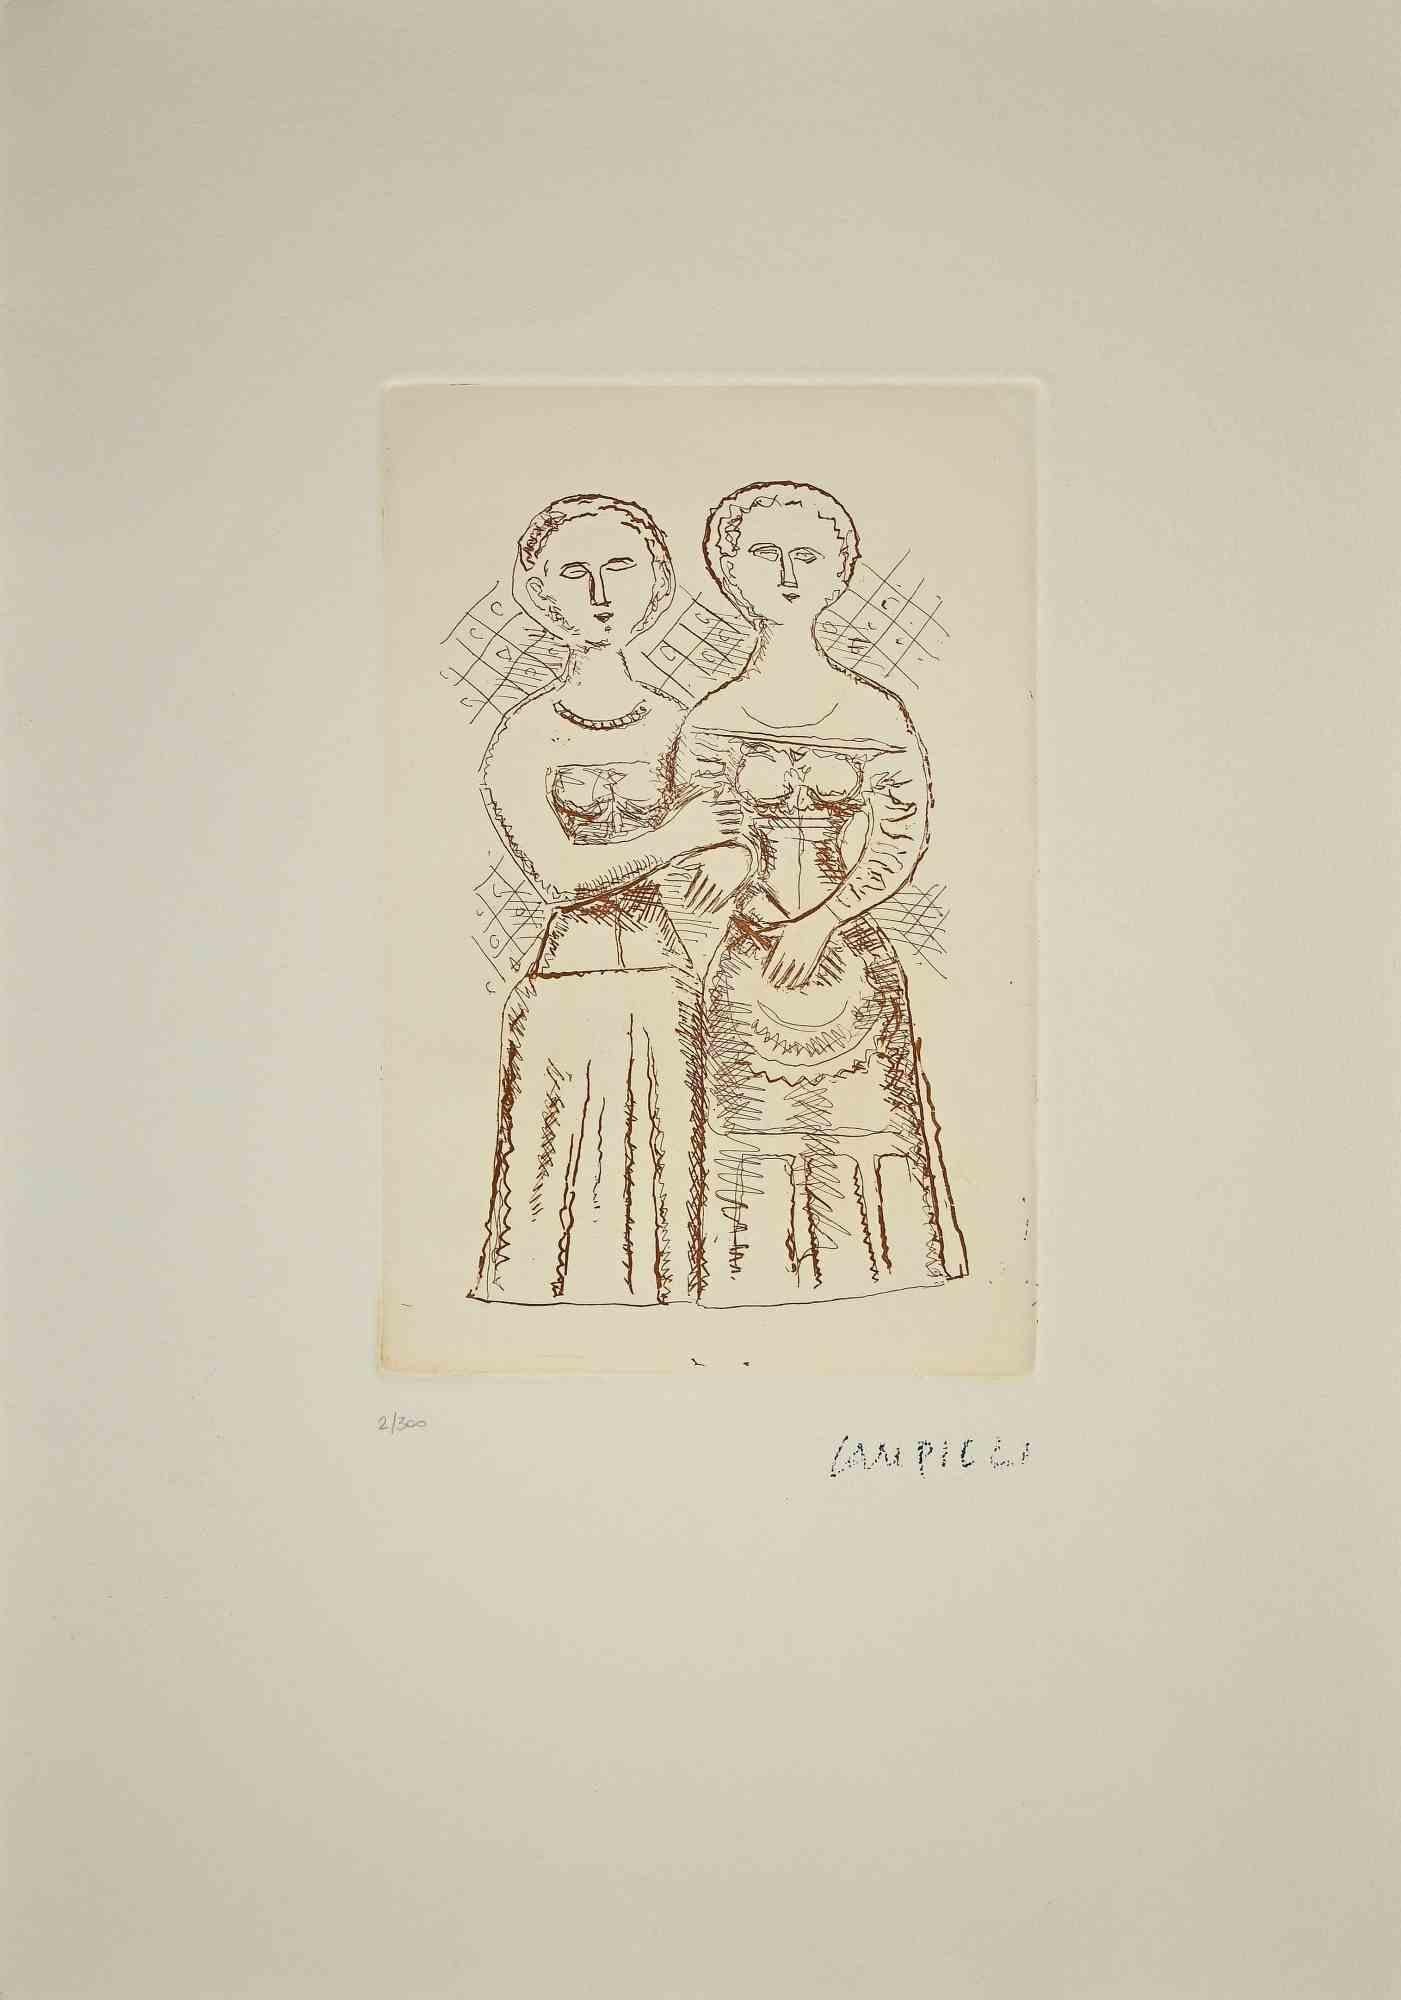 Les deux femmes est une estampe originale réalisée par Massimo Campigli dans les années 1970/1971.

Magnifique gravure à l'eau-forte et à la pointe sèche sur papier.

Cette œuvre fait partie d'une série de travaux créés dans la dernière période de